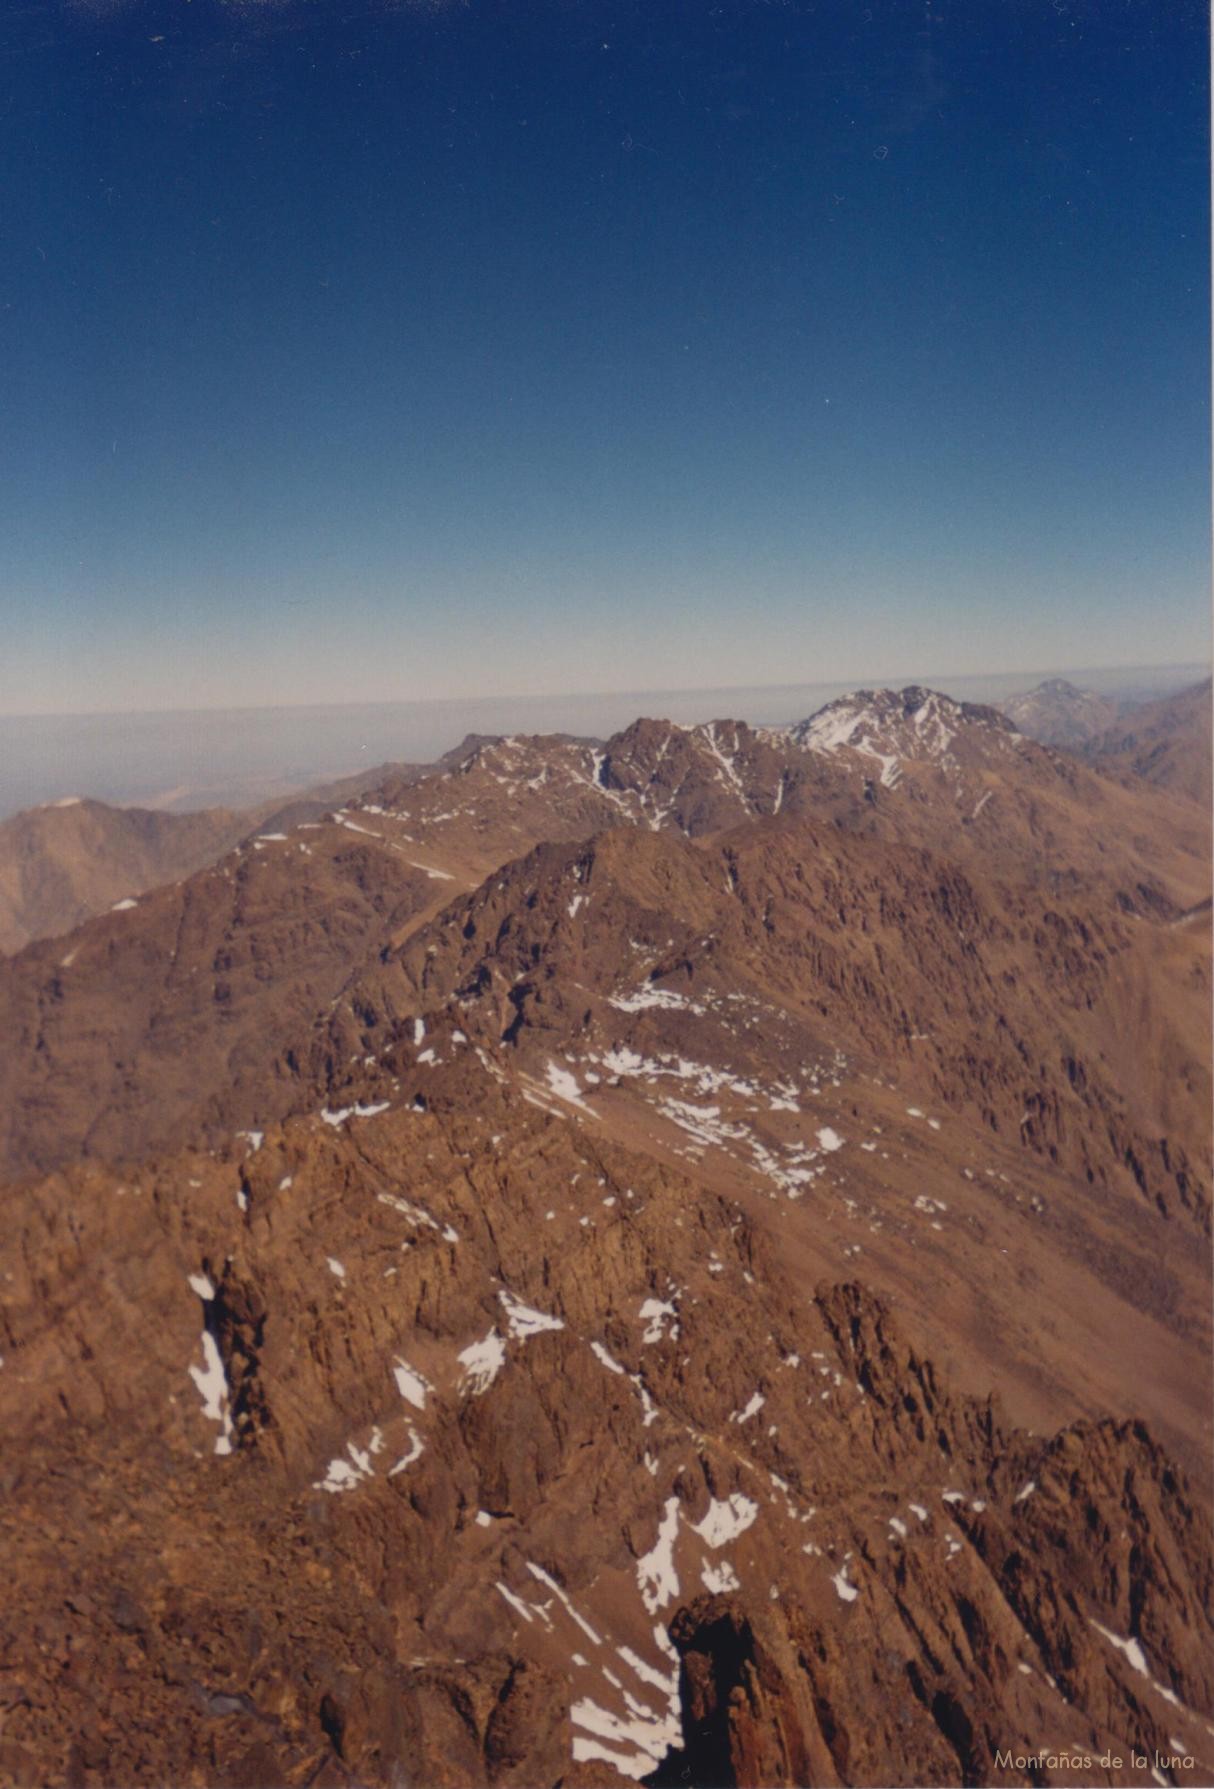 La Cordillera del Atlas desde la cima del Toubkal, en primer termino el Afekhoï, y detrás la cresta de Adrar Tichki y al fondo con más nieve el Aksoual